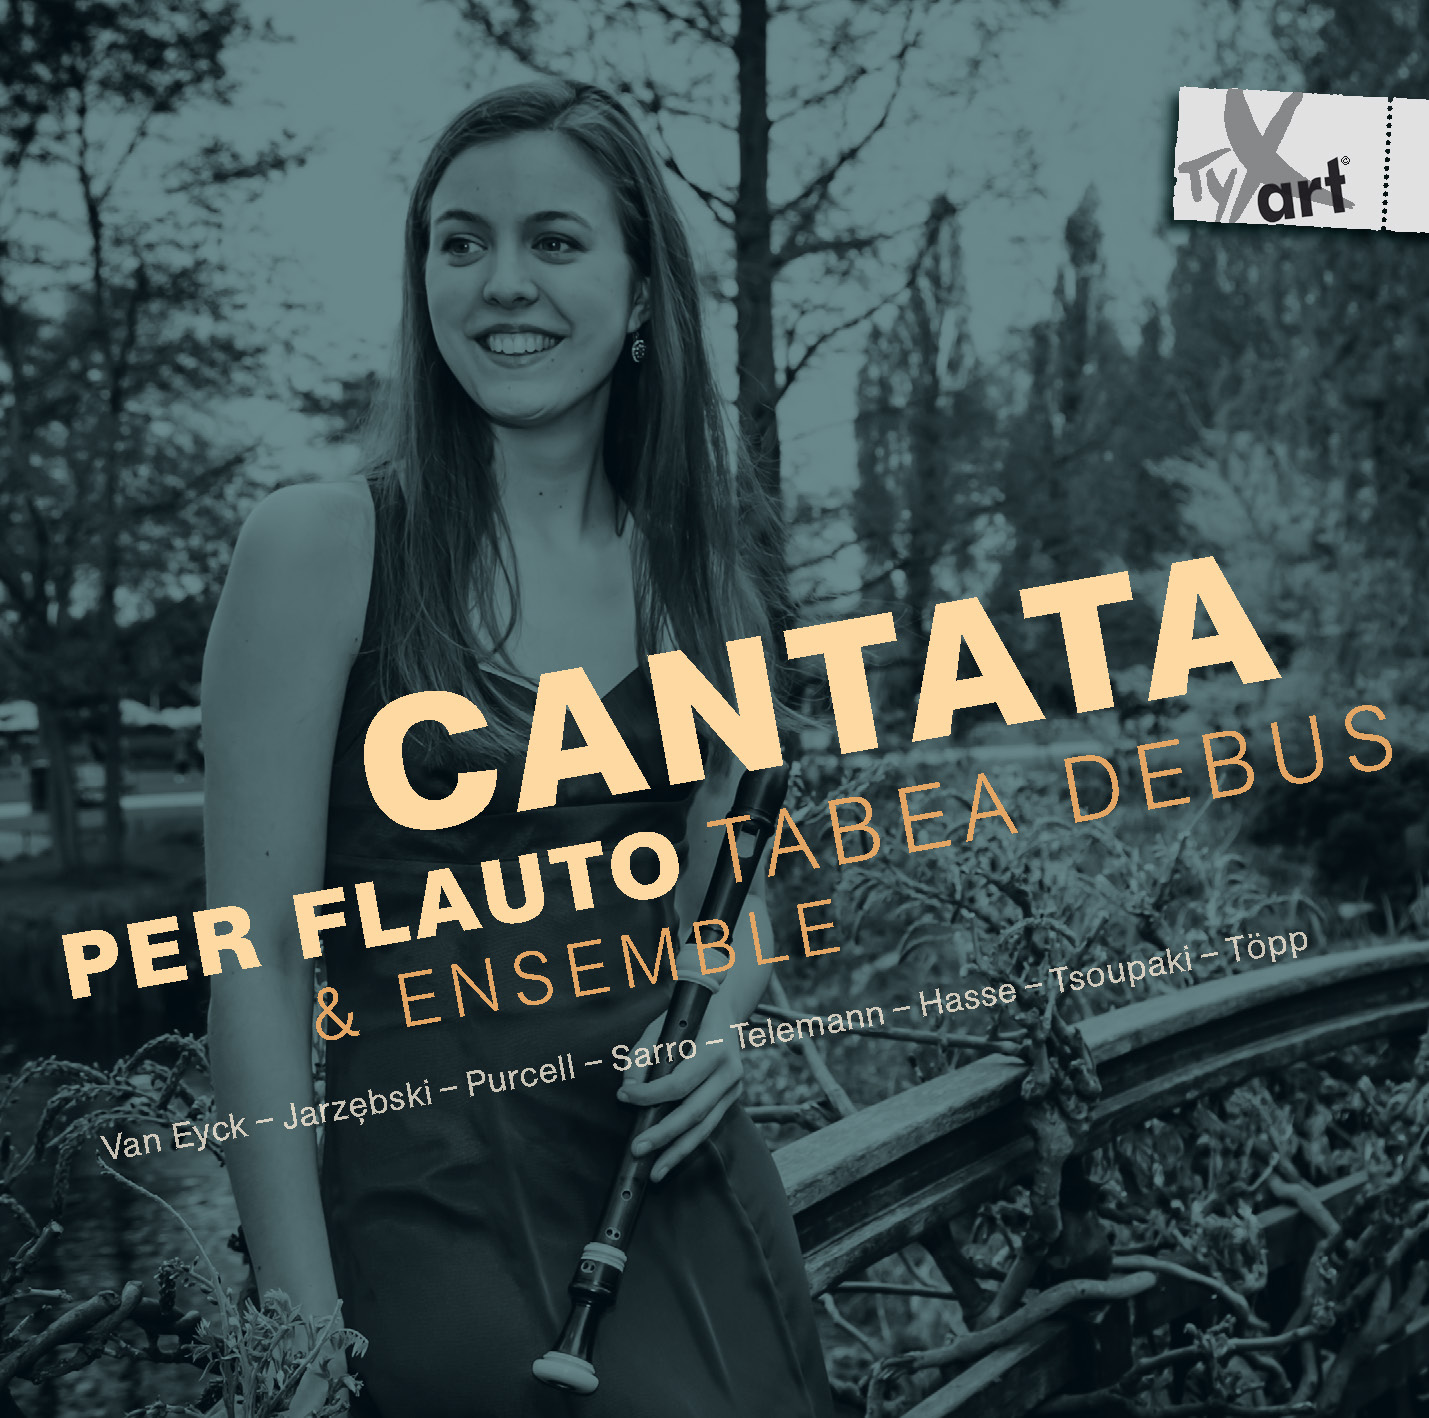 Cantata per Flauto - Tabea Debus und Ensemble